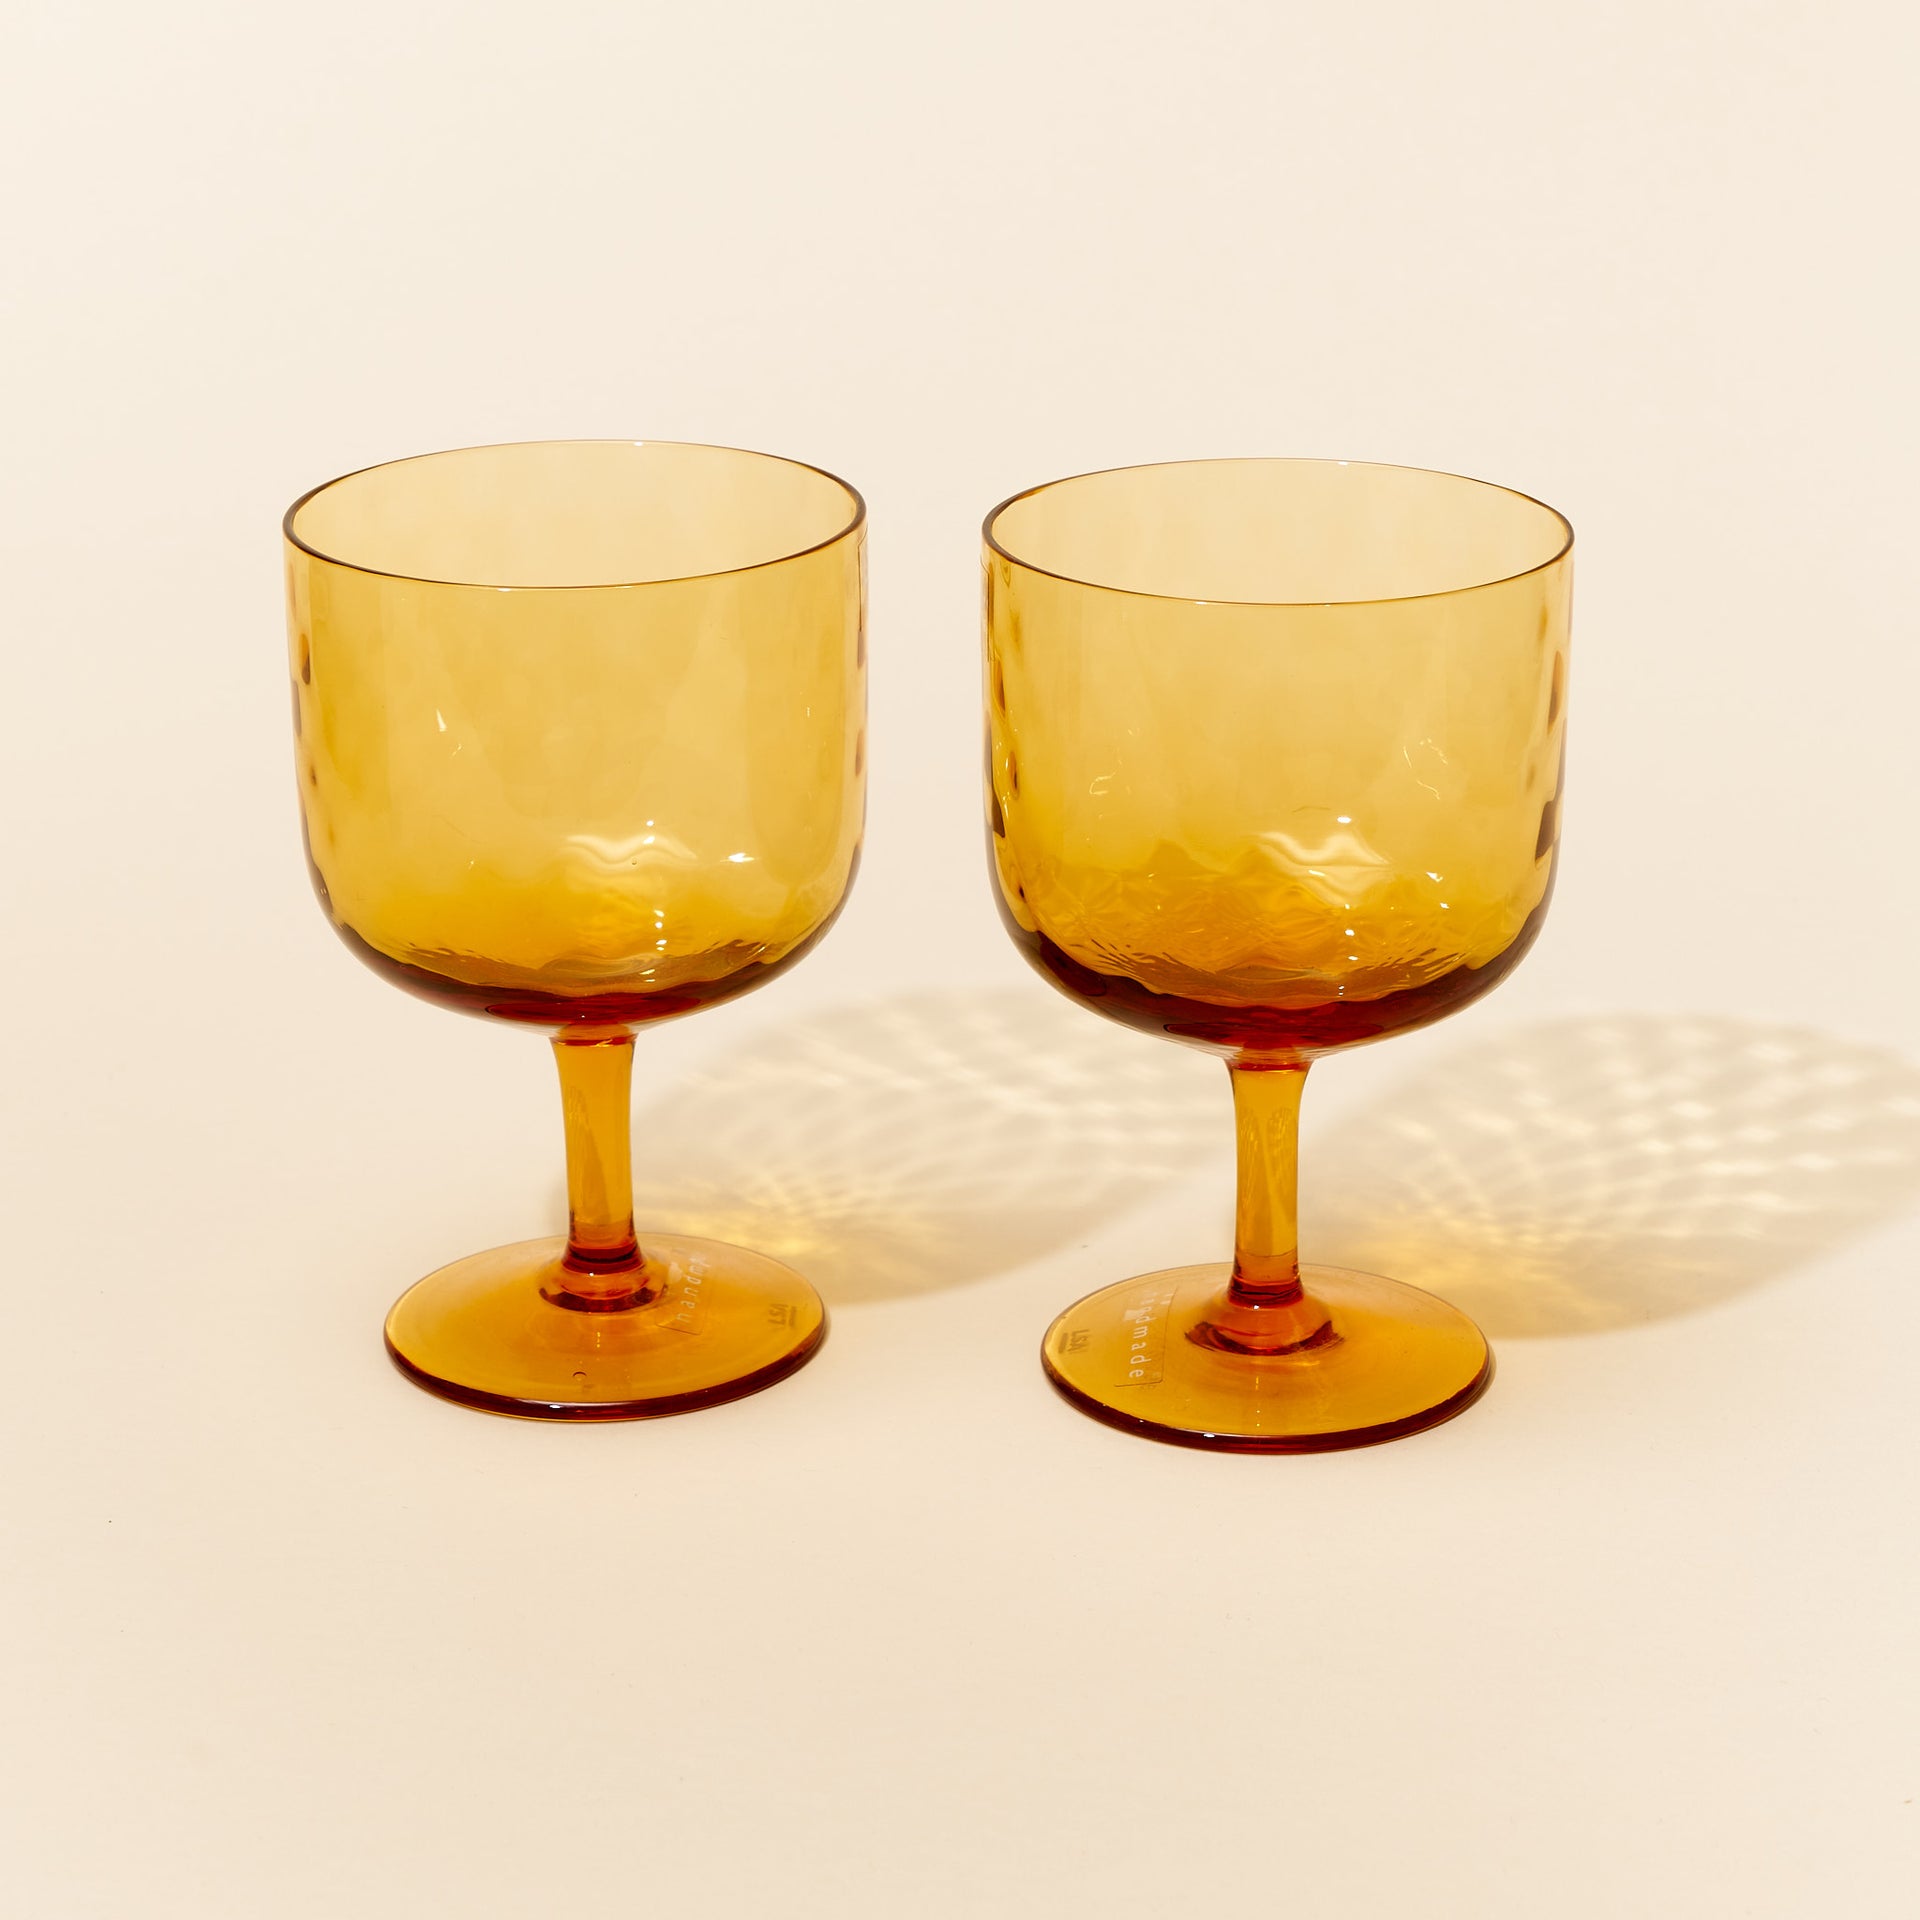 Dapple Wine Glass - Set of 2